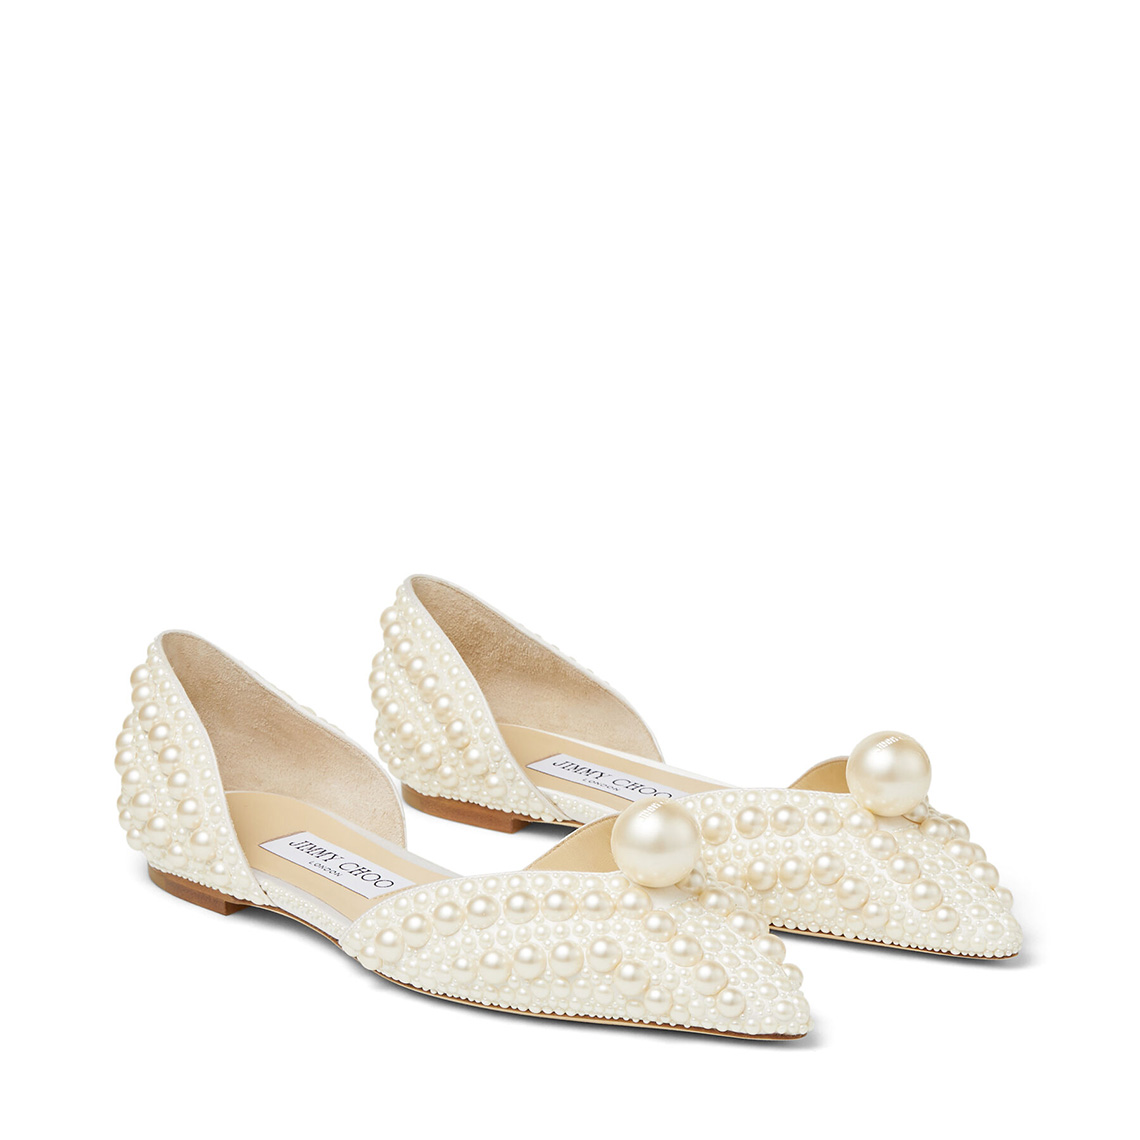 Sabine Flat by Jimmy Choo Flat Wedding Shoes Just As Chic As Heels Bridal Musings - 20 đôi giày cưới bằng phẳng (sang trọng như giày cao gót)